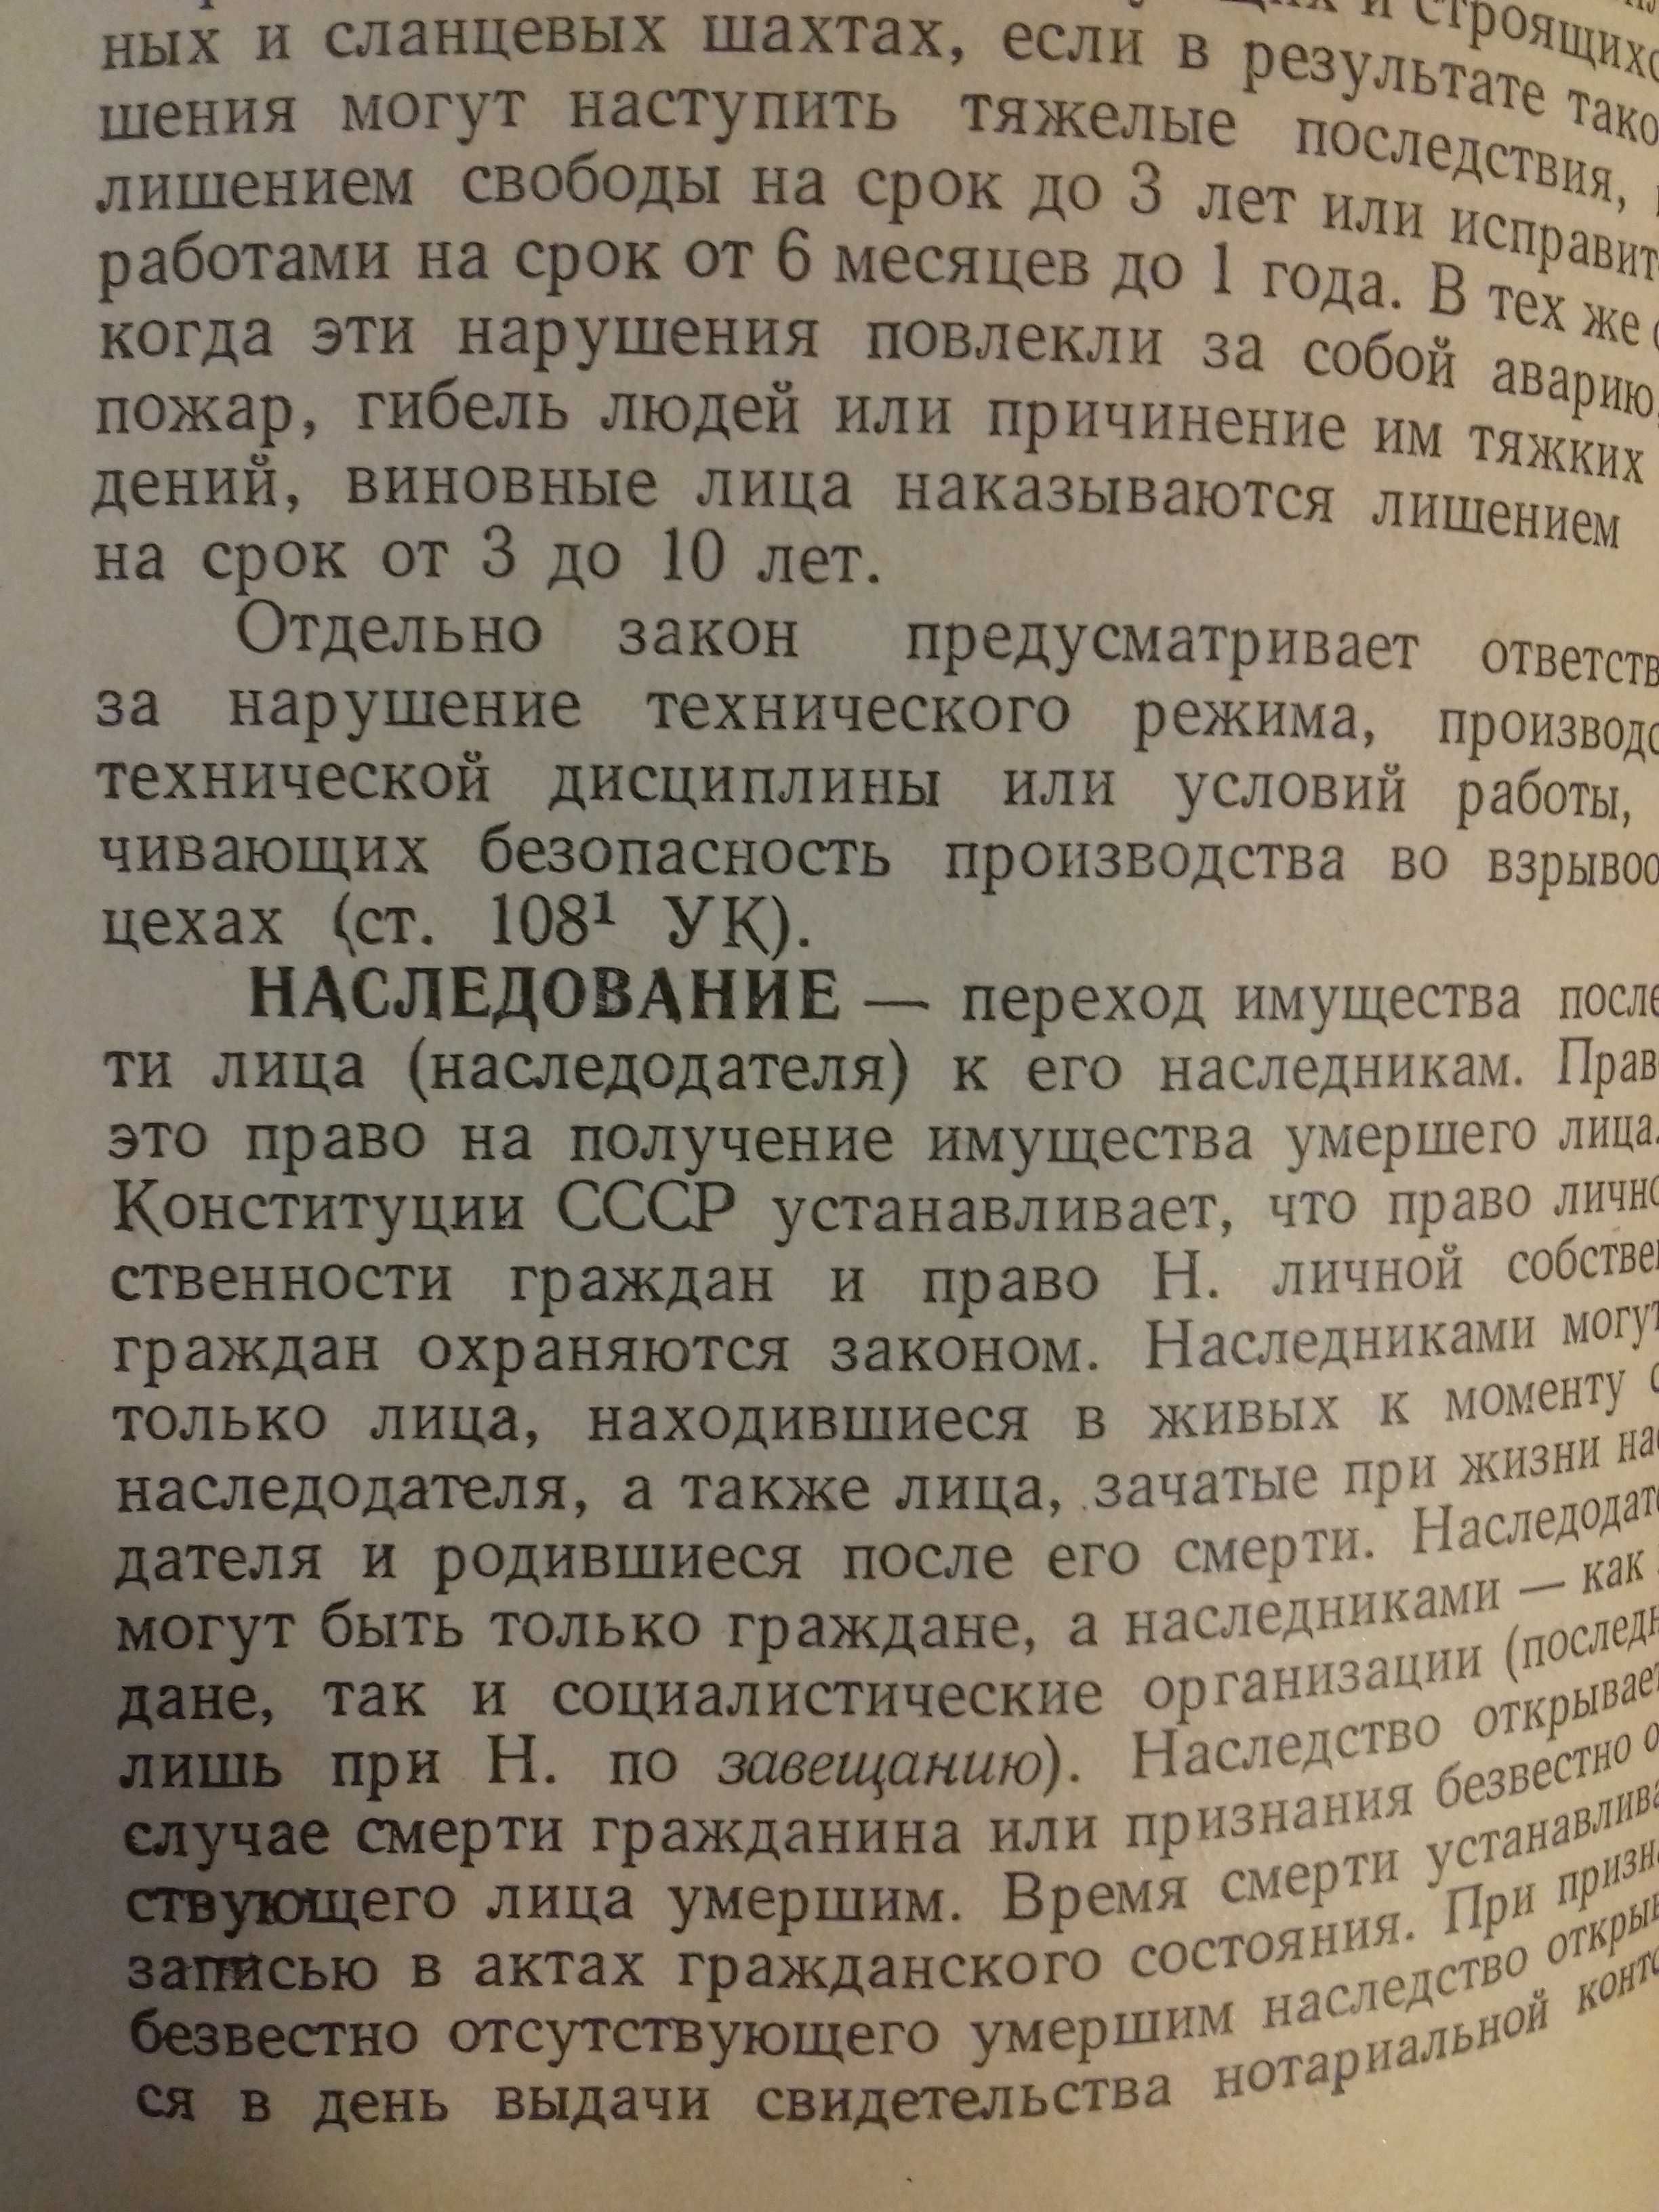 Юридический словарь-справочник.Книга 1960 года